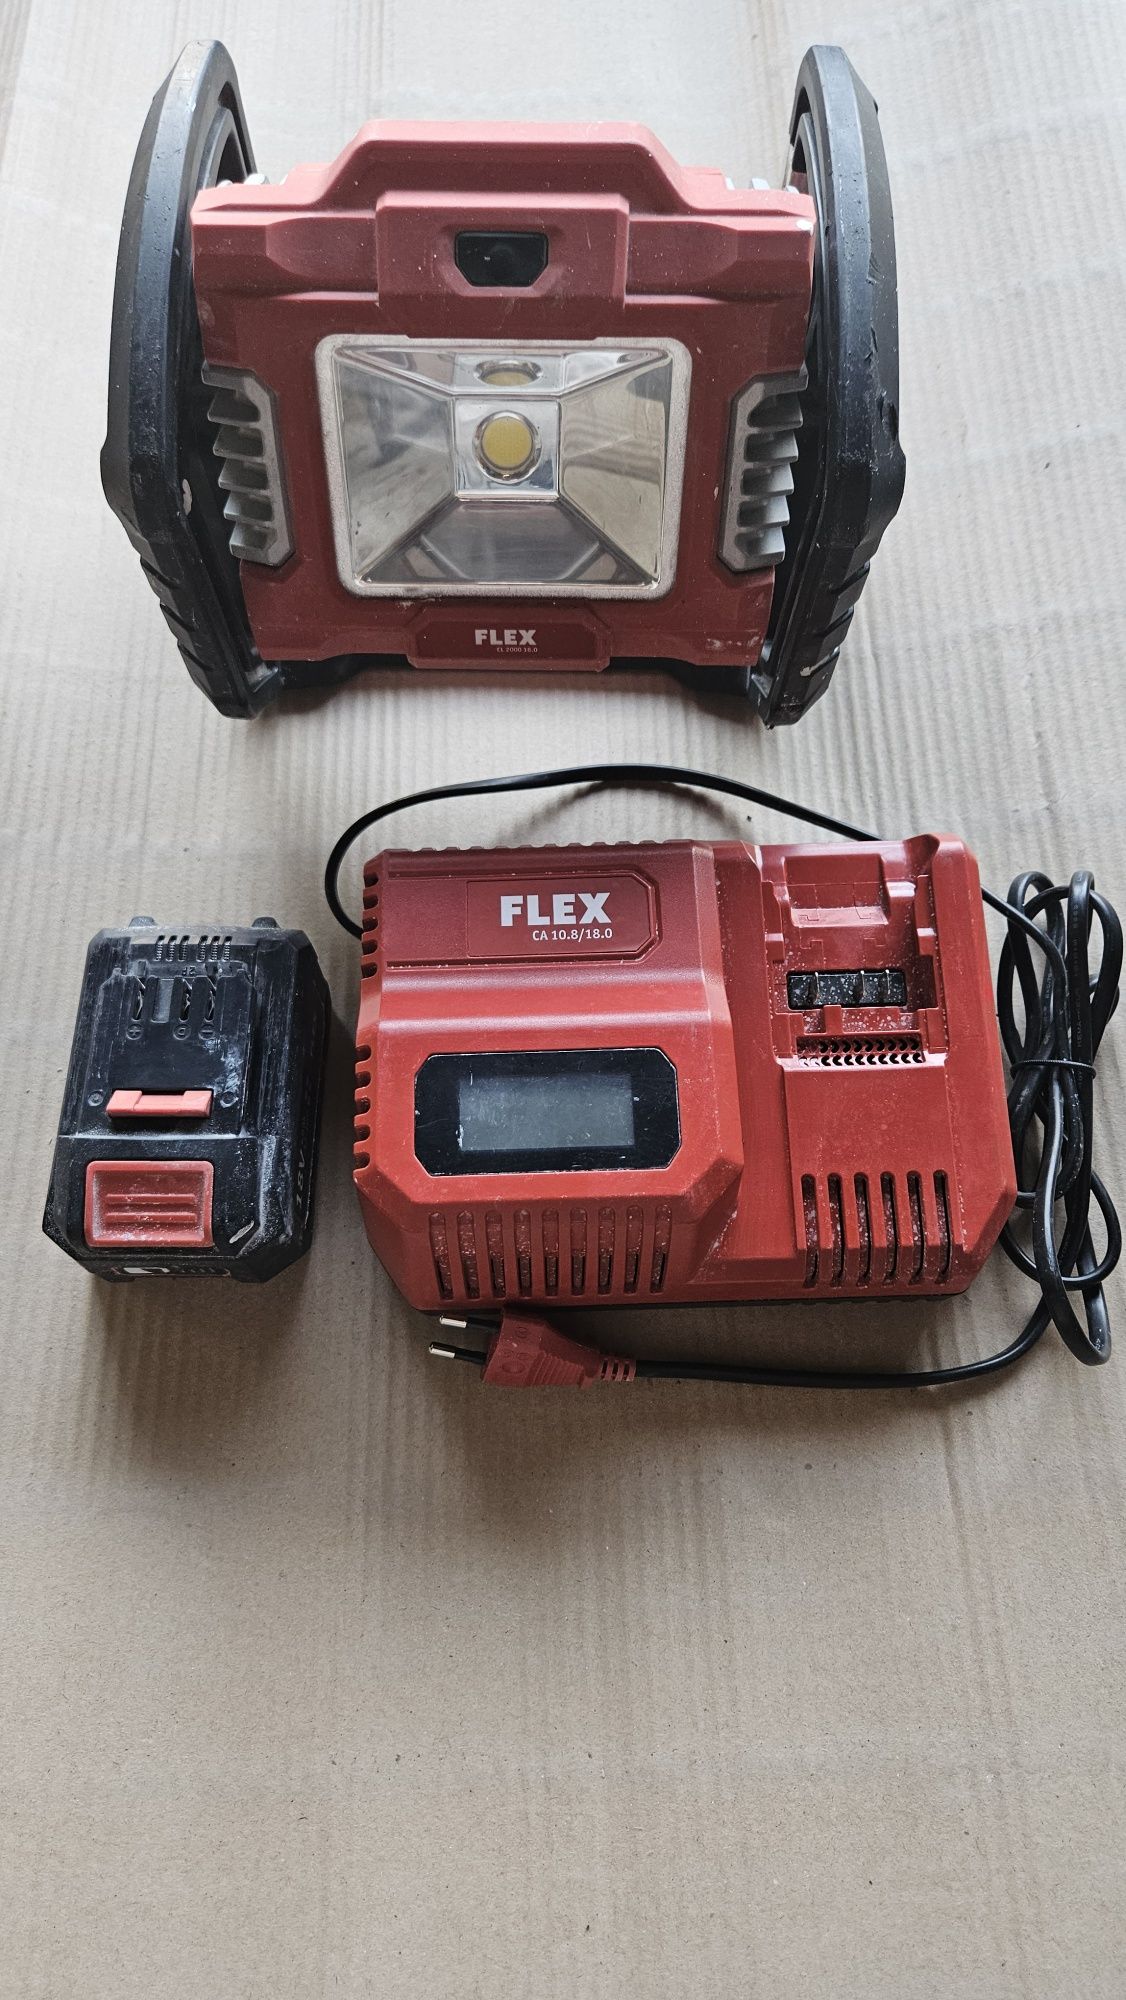 Lampa reflektor akumulatorowy Flex CL 2000 18 V komplet